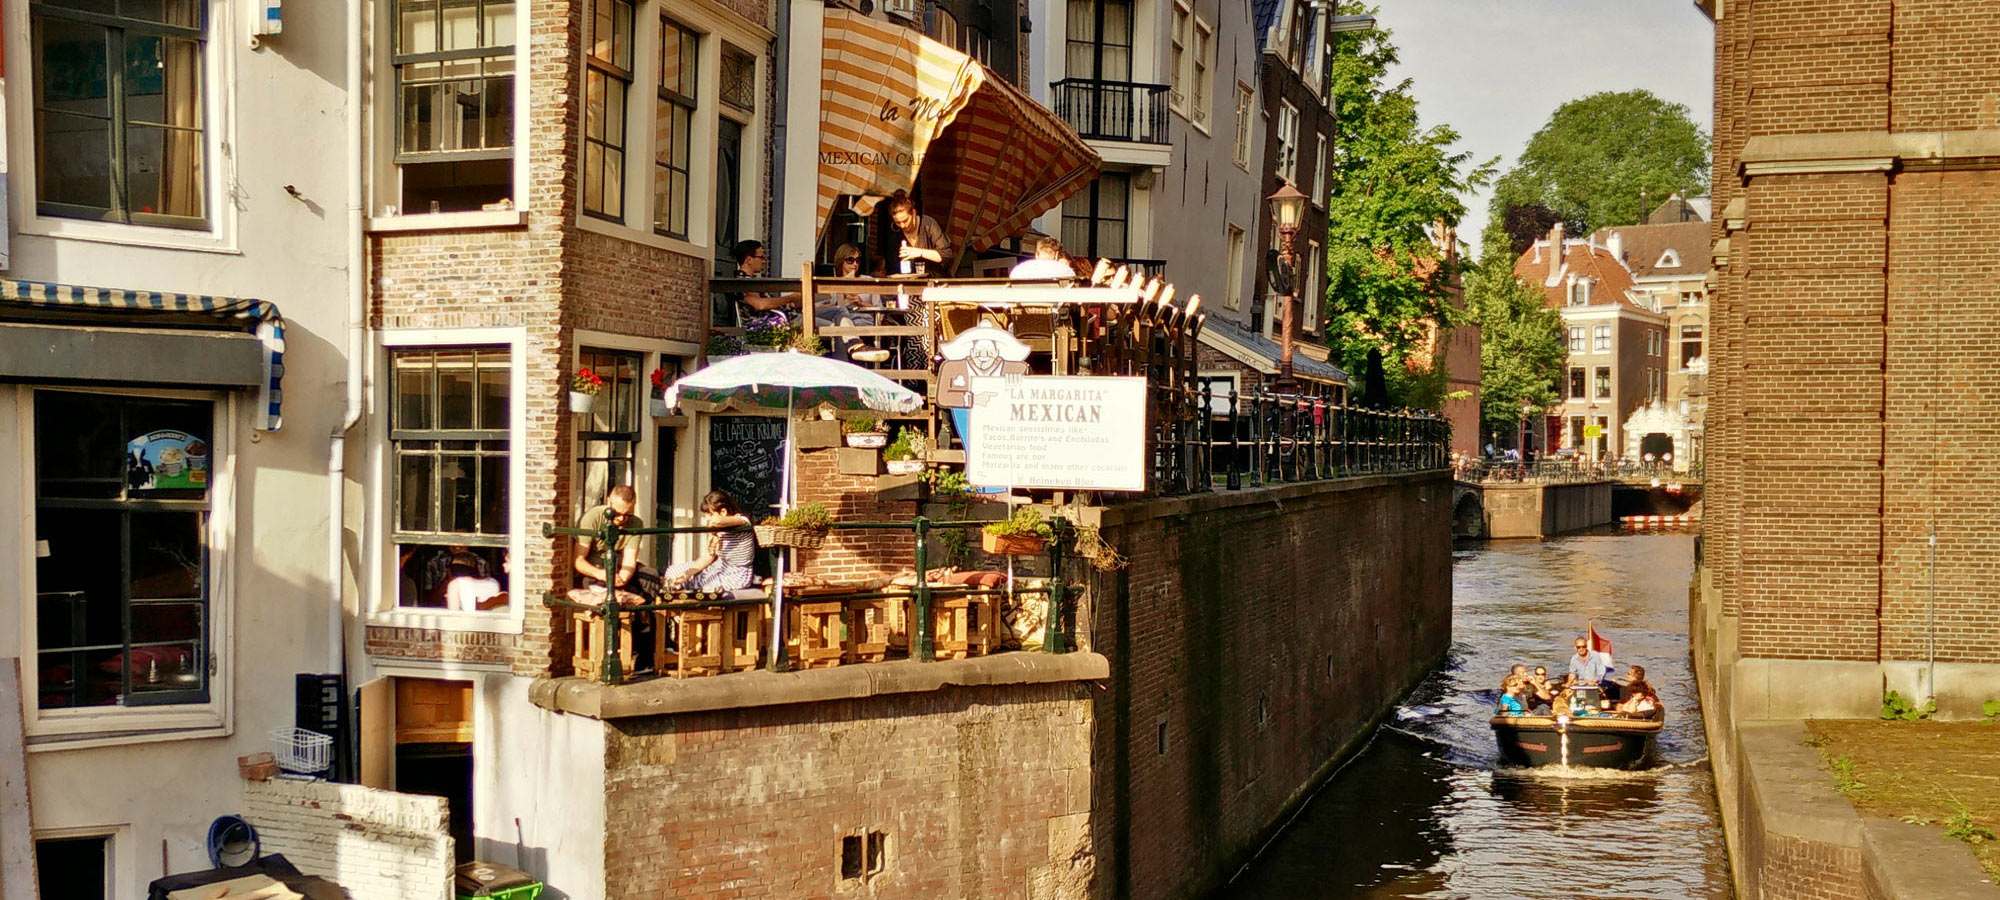 Balkon von De Laatste Kruimel und Gracht Grimburgwal mit Boot